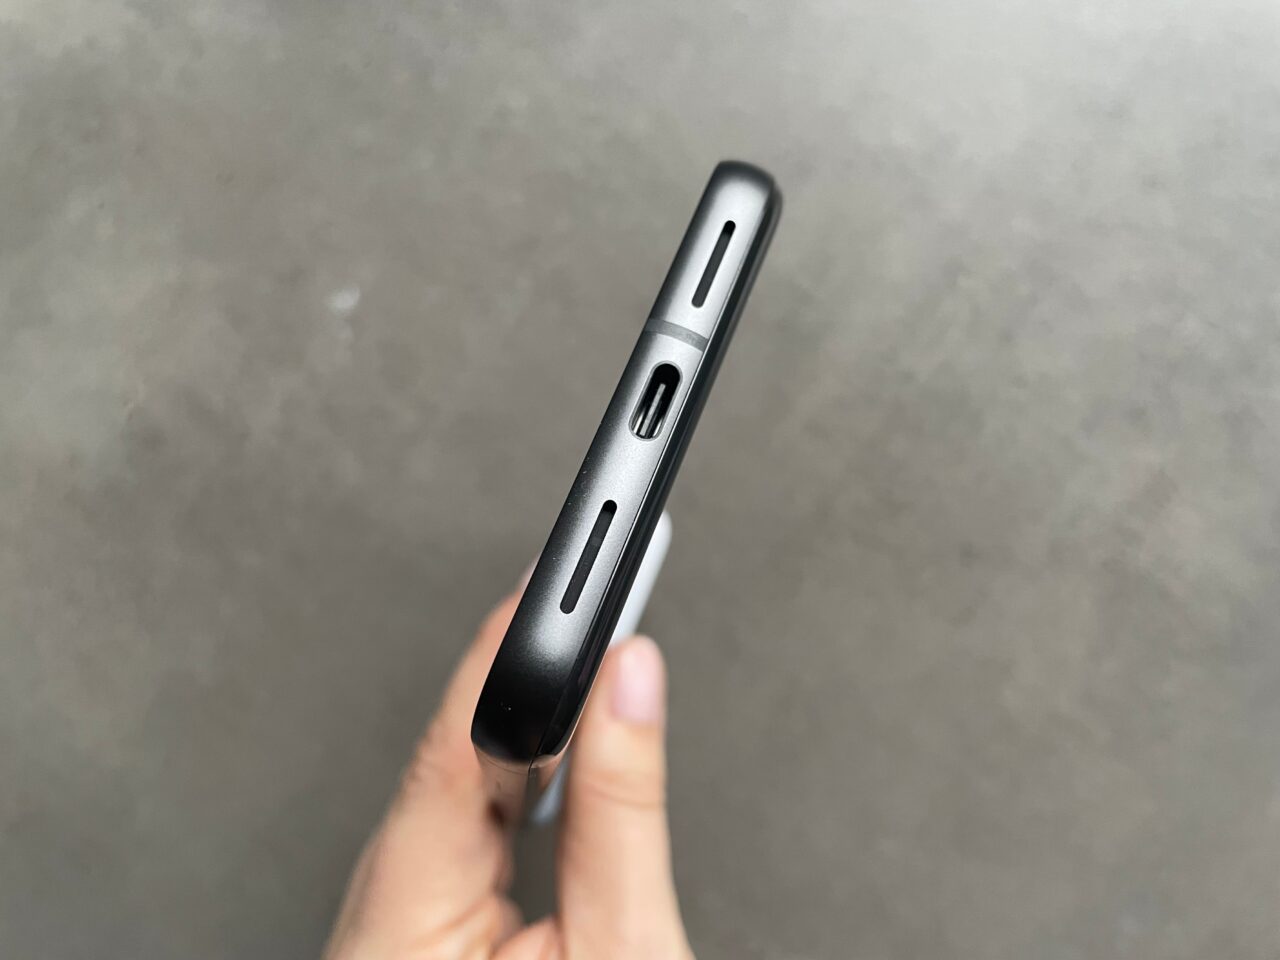 Czarny smartfon trzymany w dłoni z boku, pokazujący przyciski głośności, slot karty SIM i przycisk blokady.